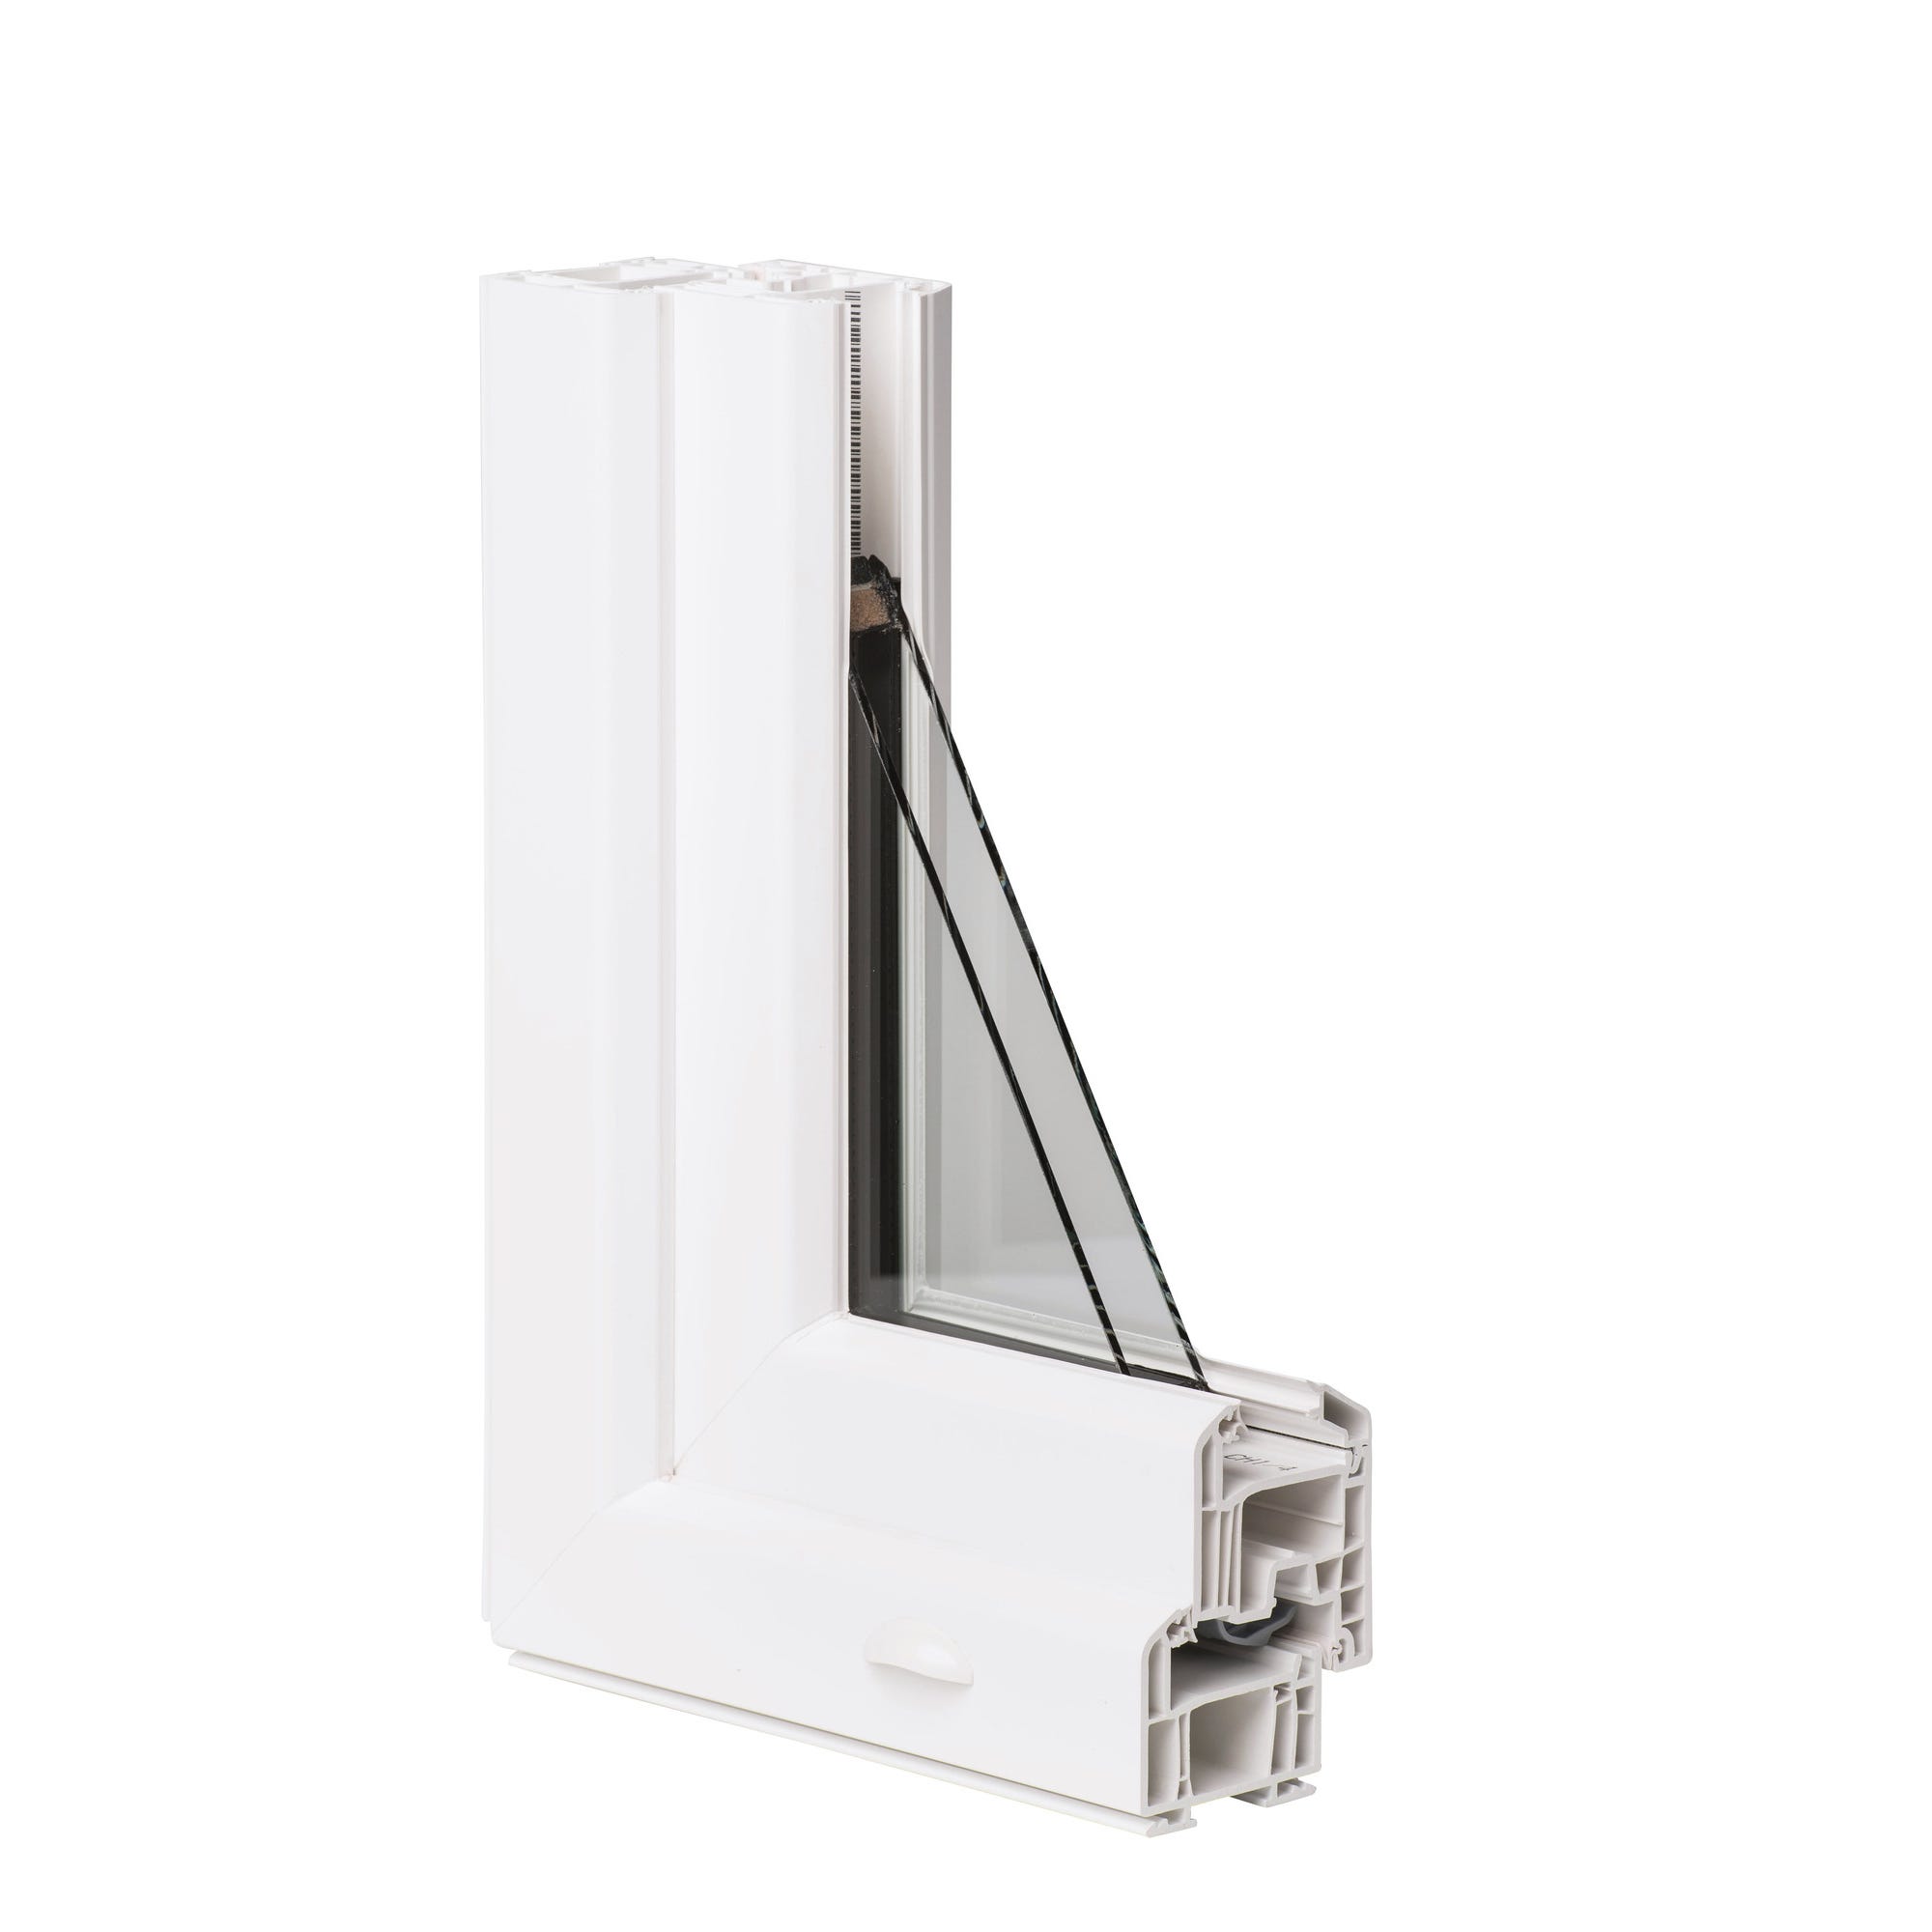 Fenêtre PVC H.135 x l.100 cm oscillo-battant 2 vantaux blanc 0